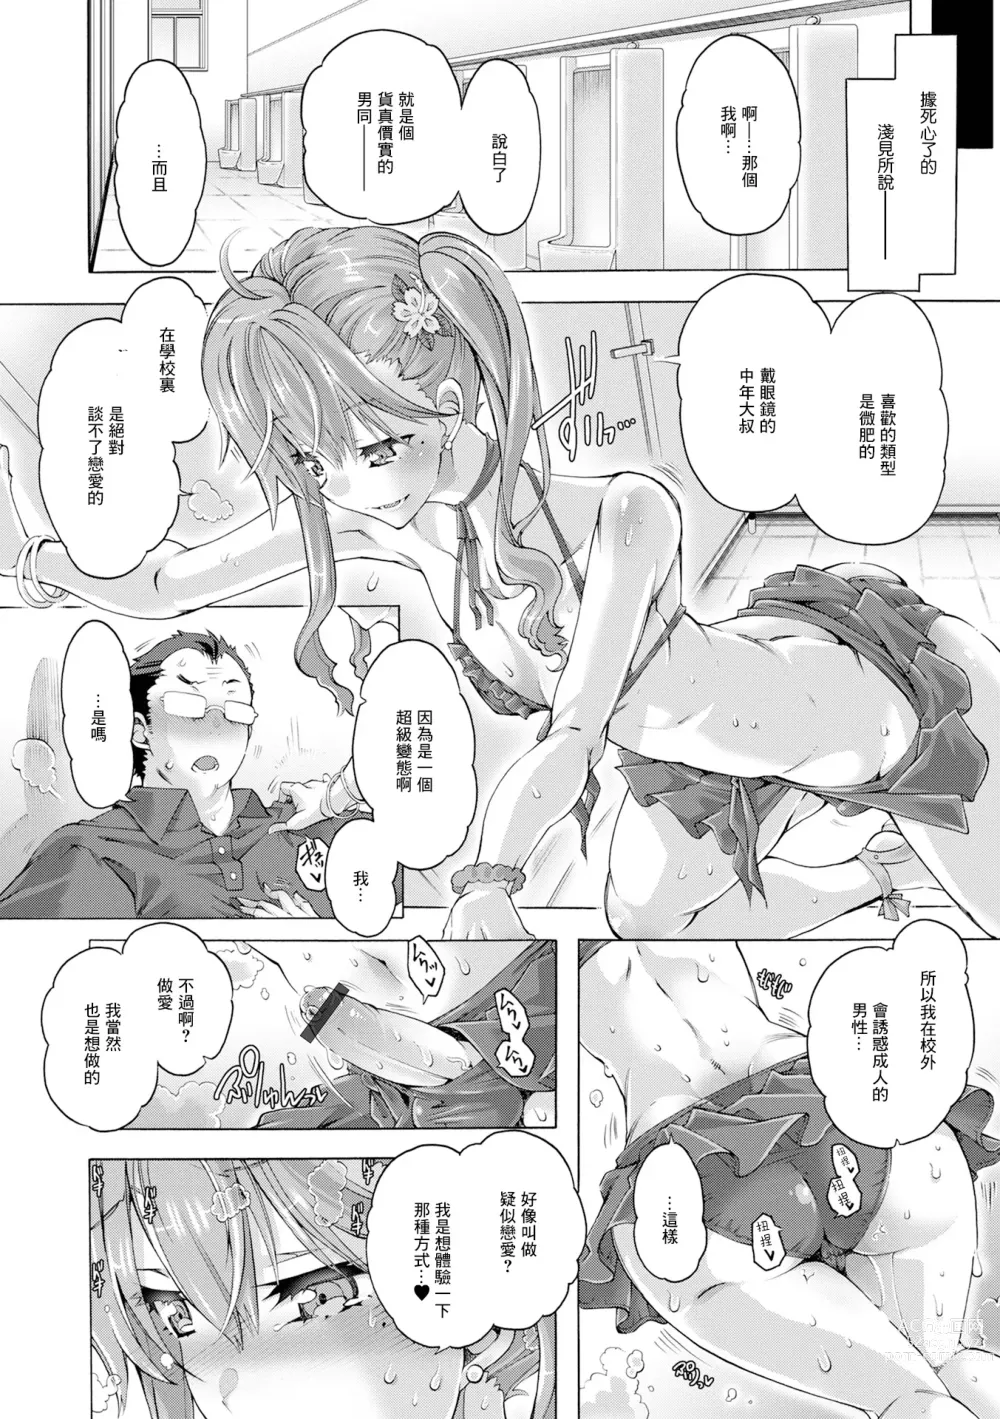 Page 8 of manga Hatsujou Maniacs